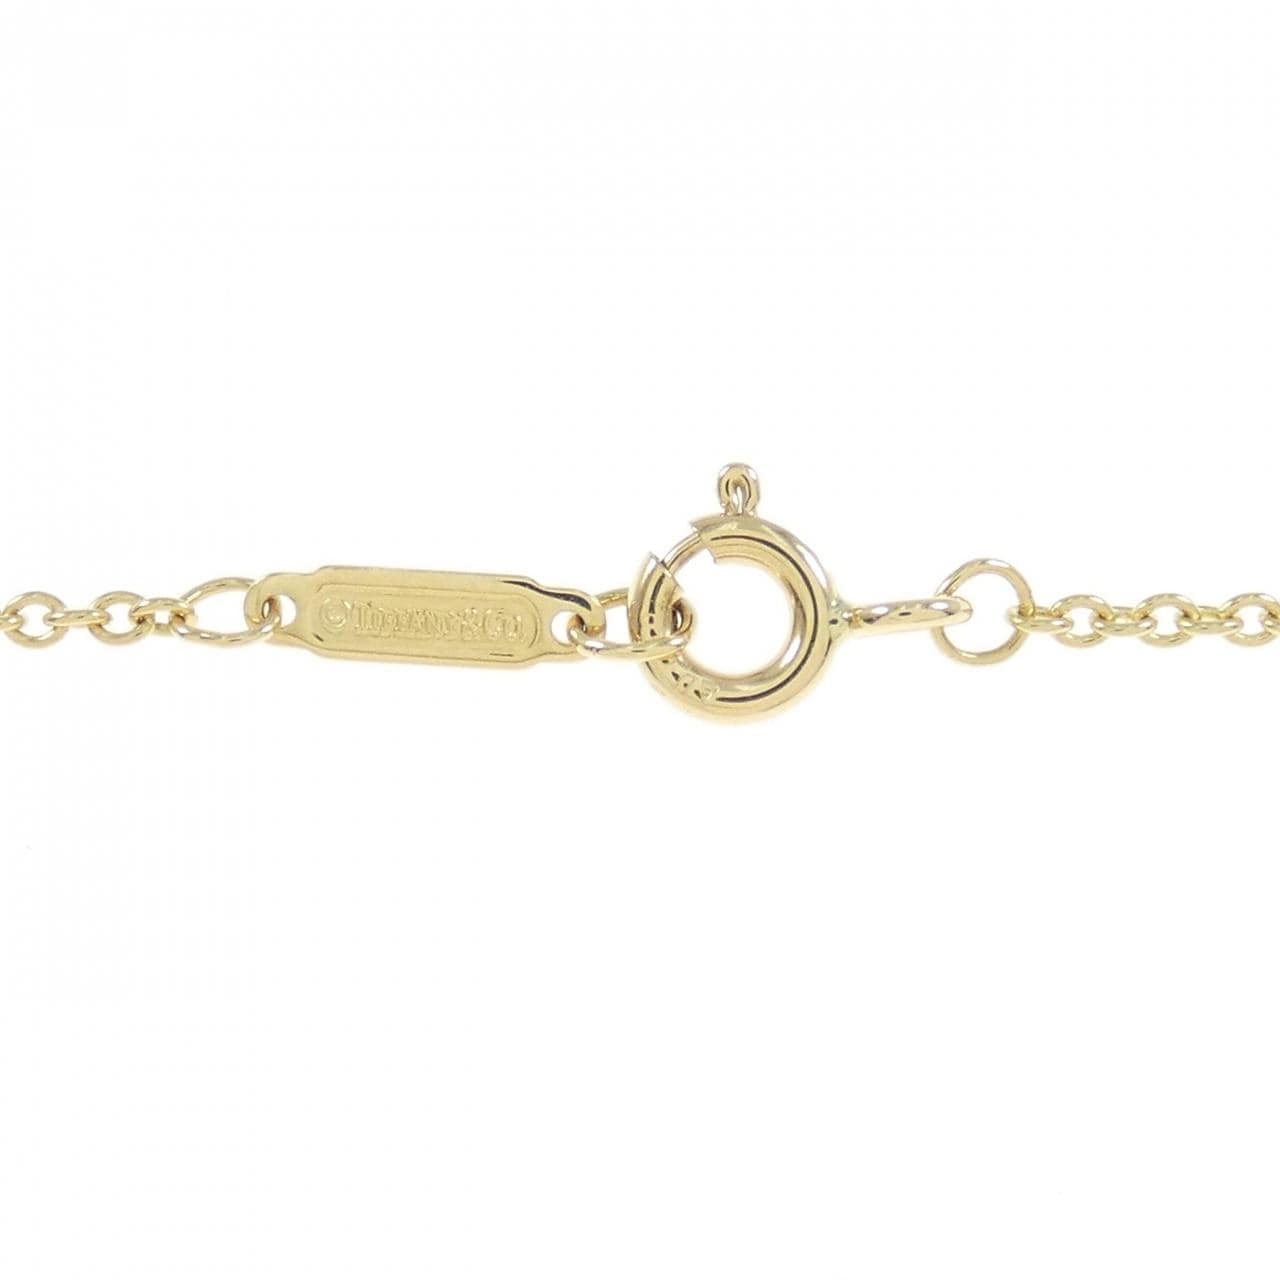 TIFFANY T double chain bracelet